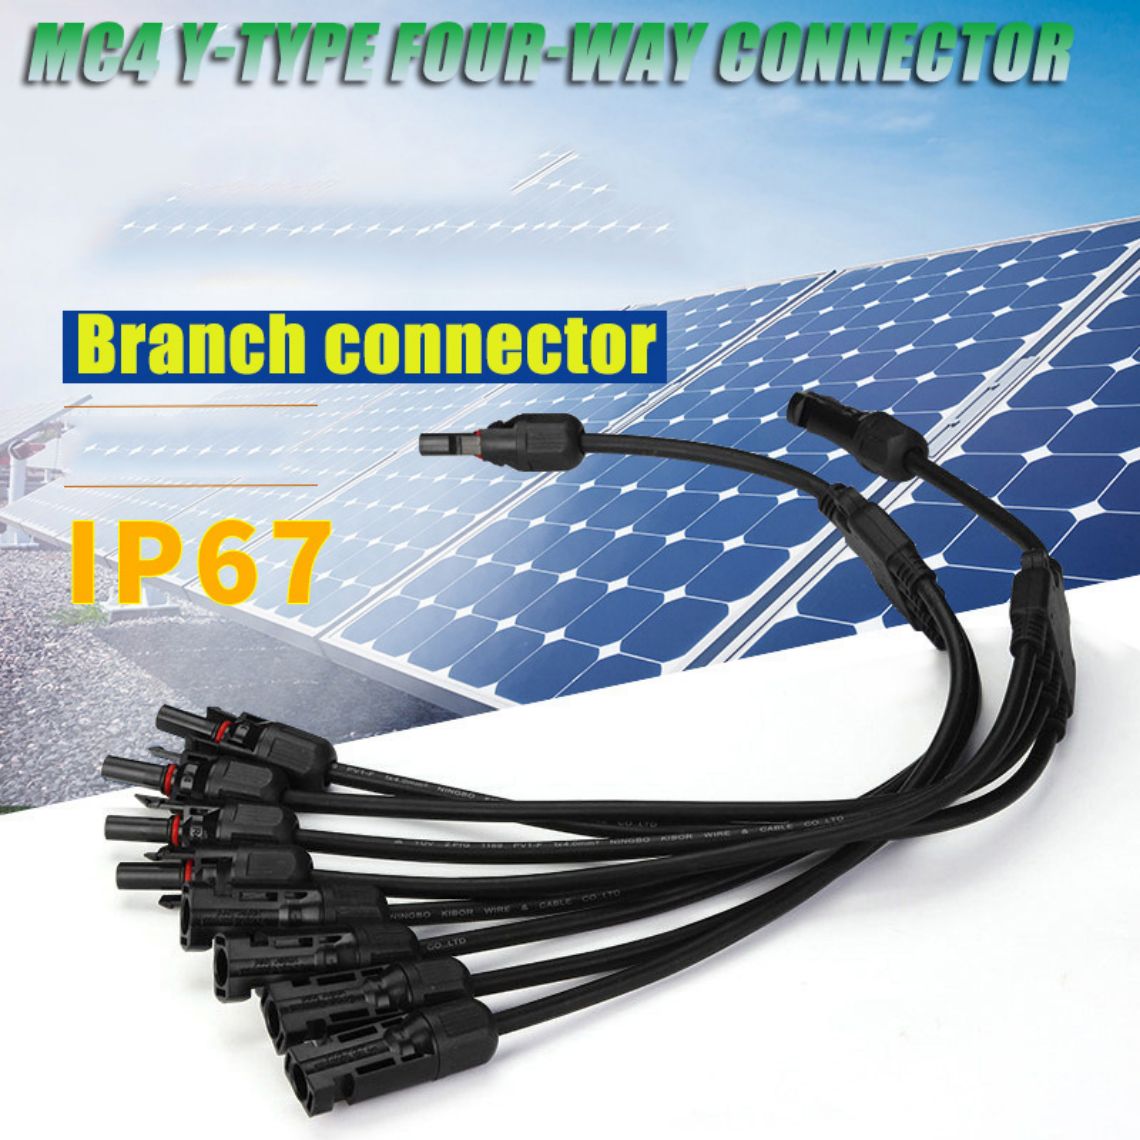 Konektor MC4 tipe Y cabang surya